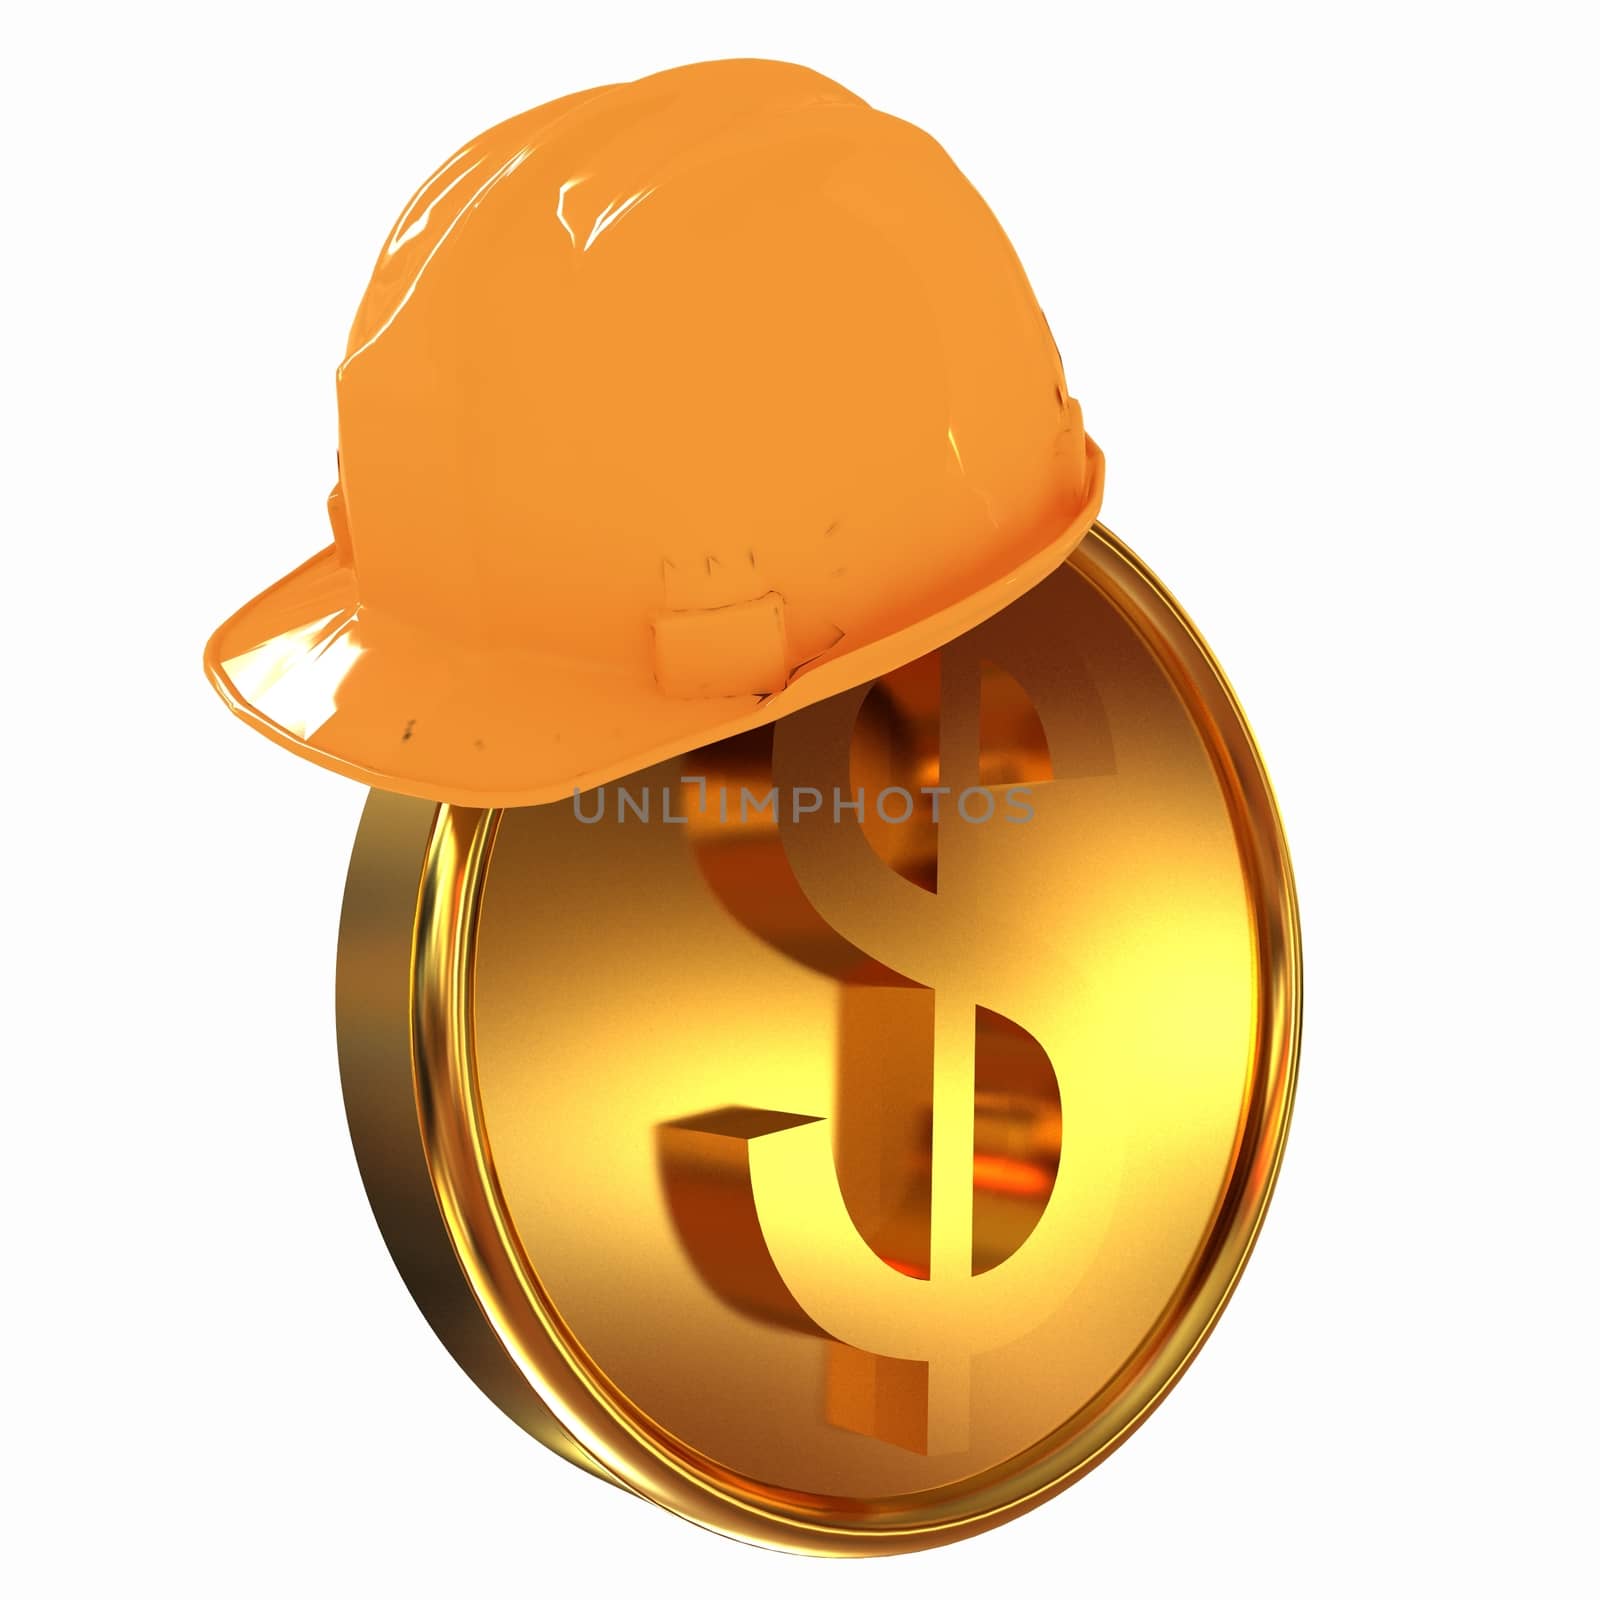 Hard hat on gold dollar coin by Guru3D